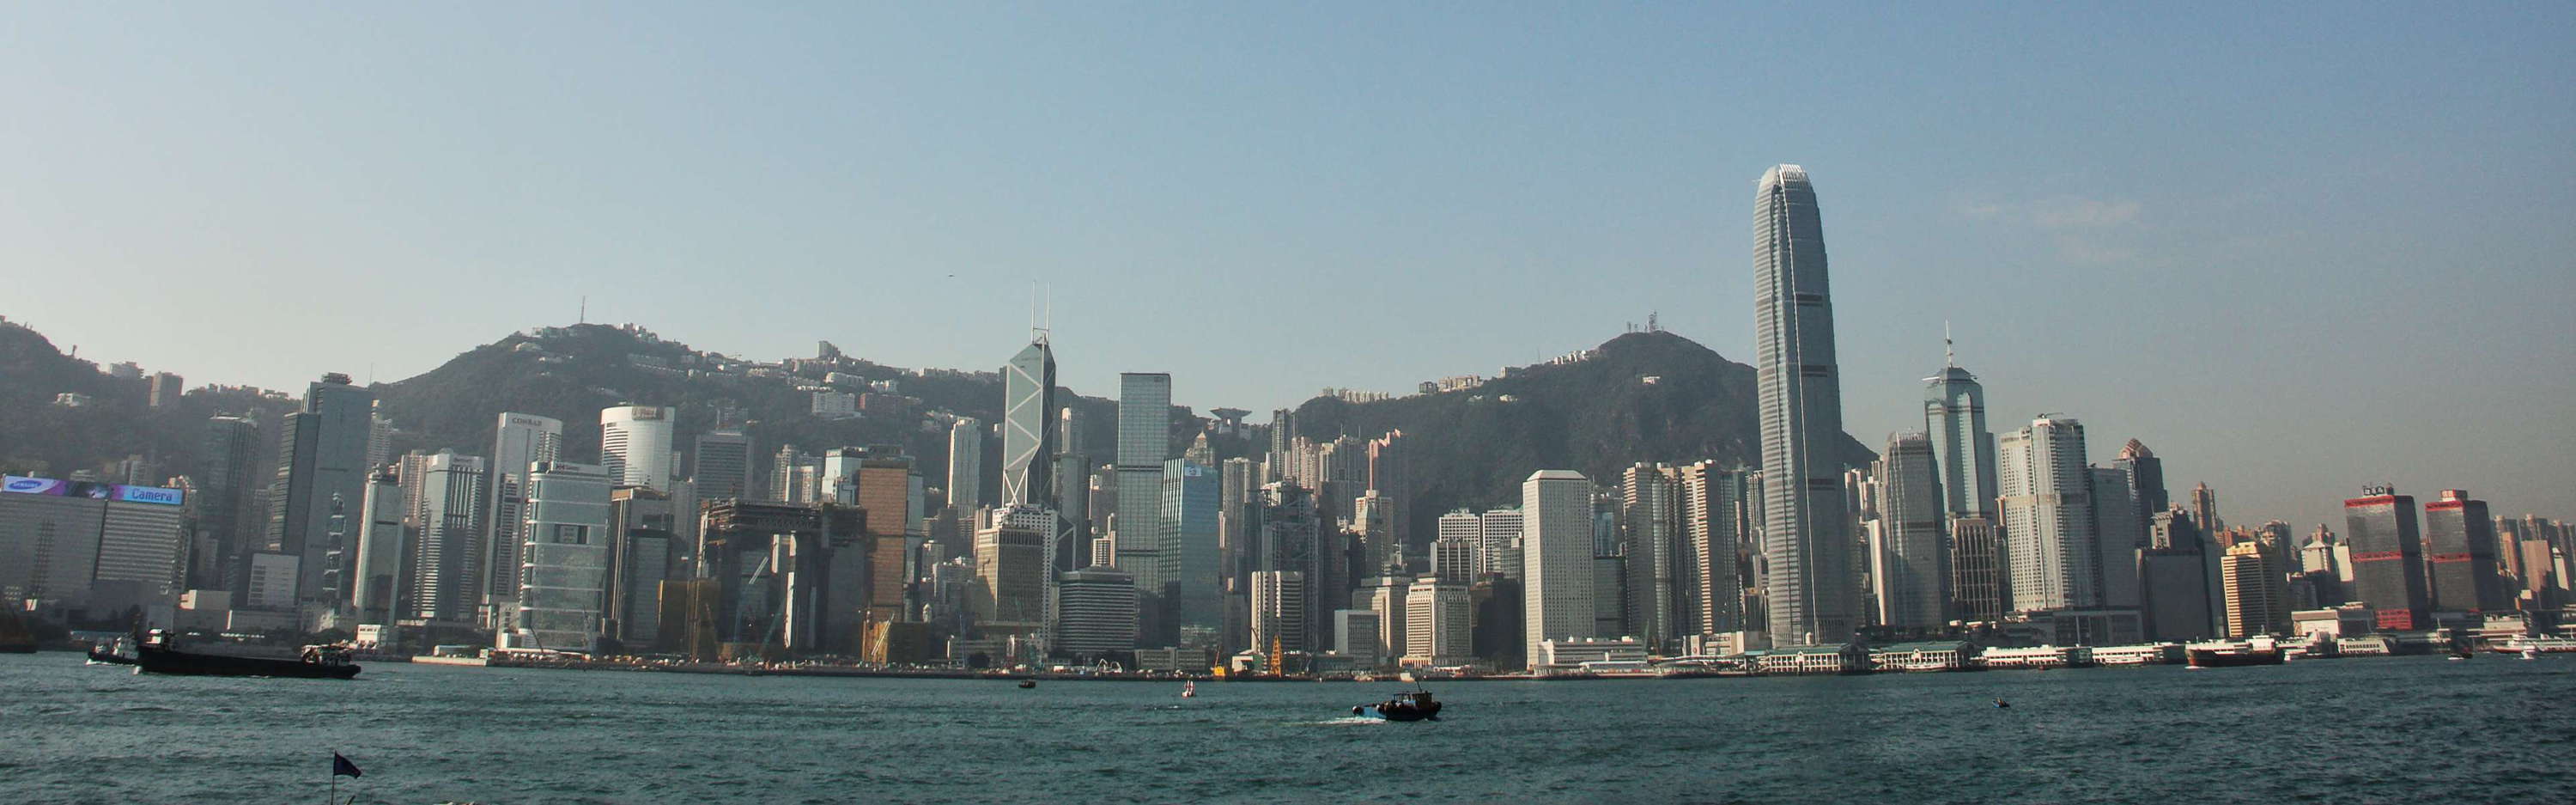 Hong Kong  |  Hong Kong Island panorama